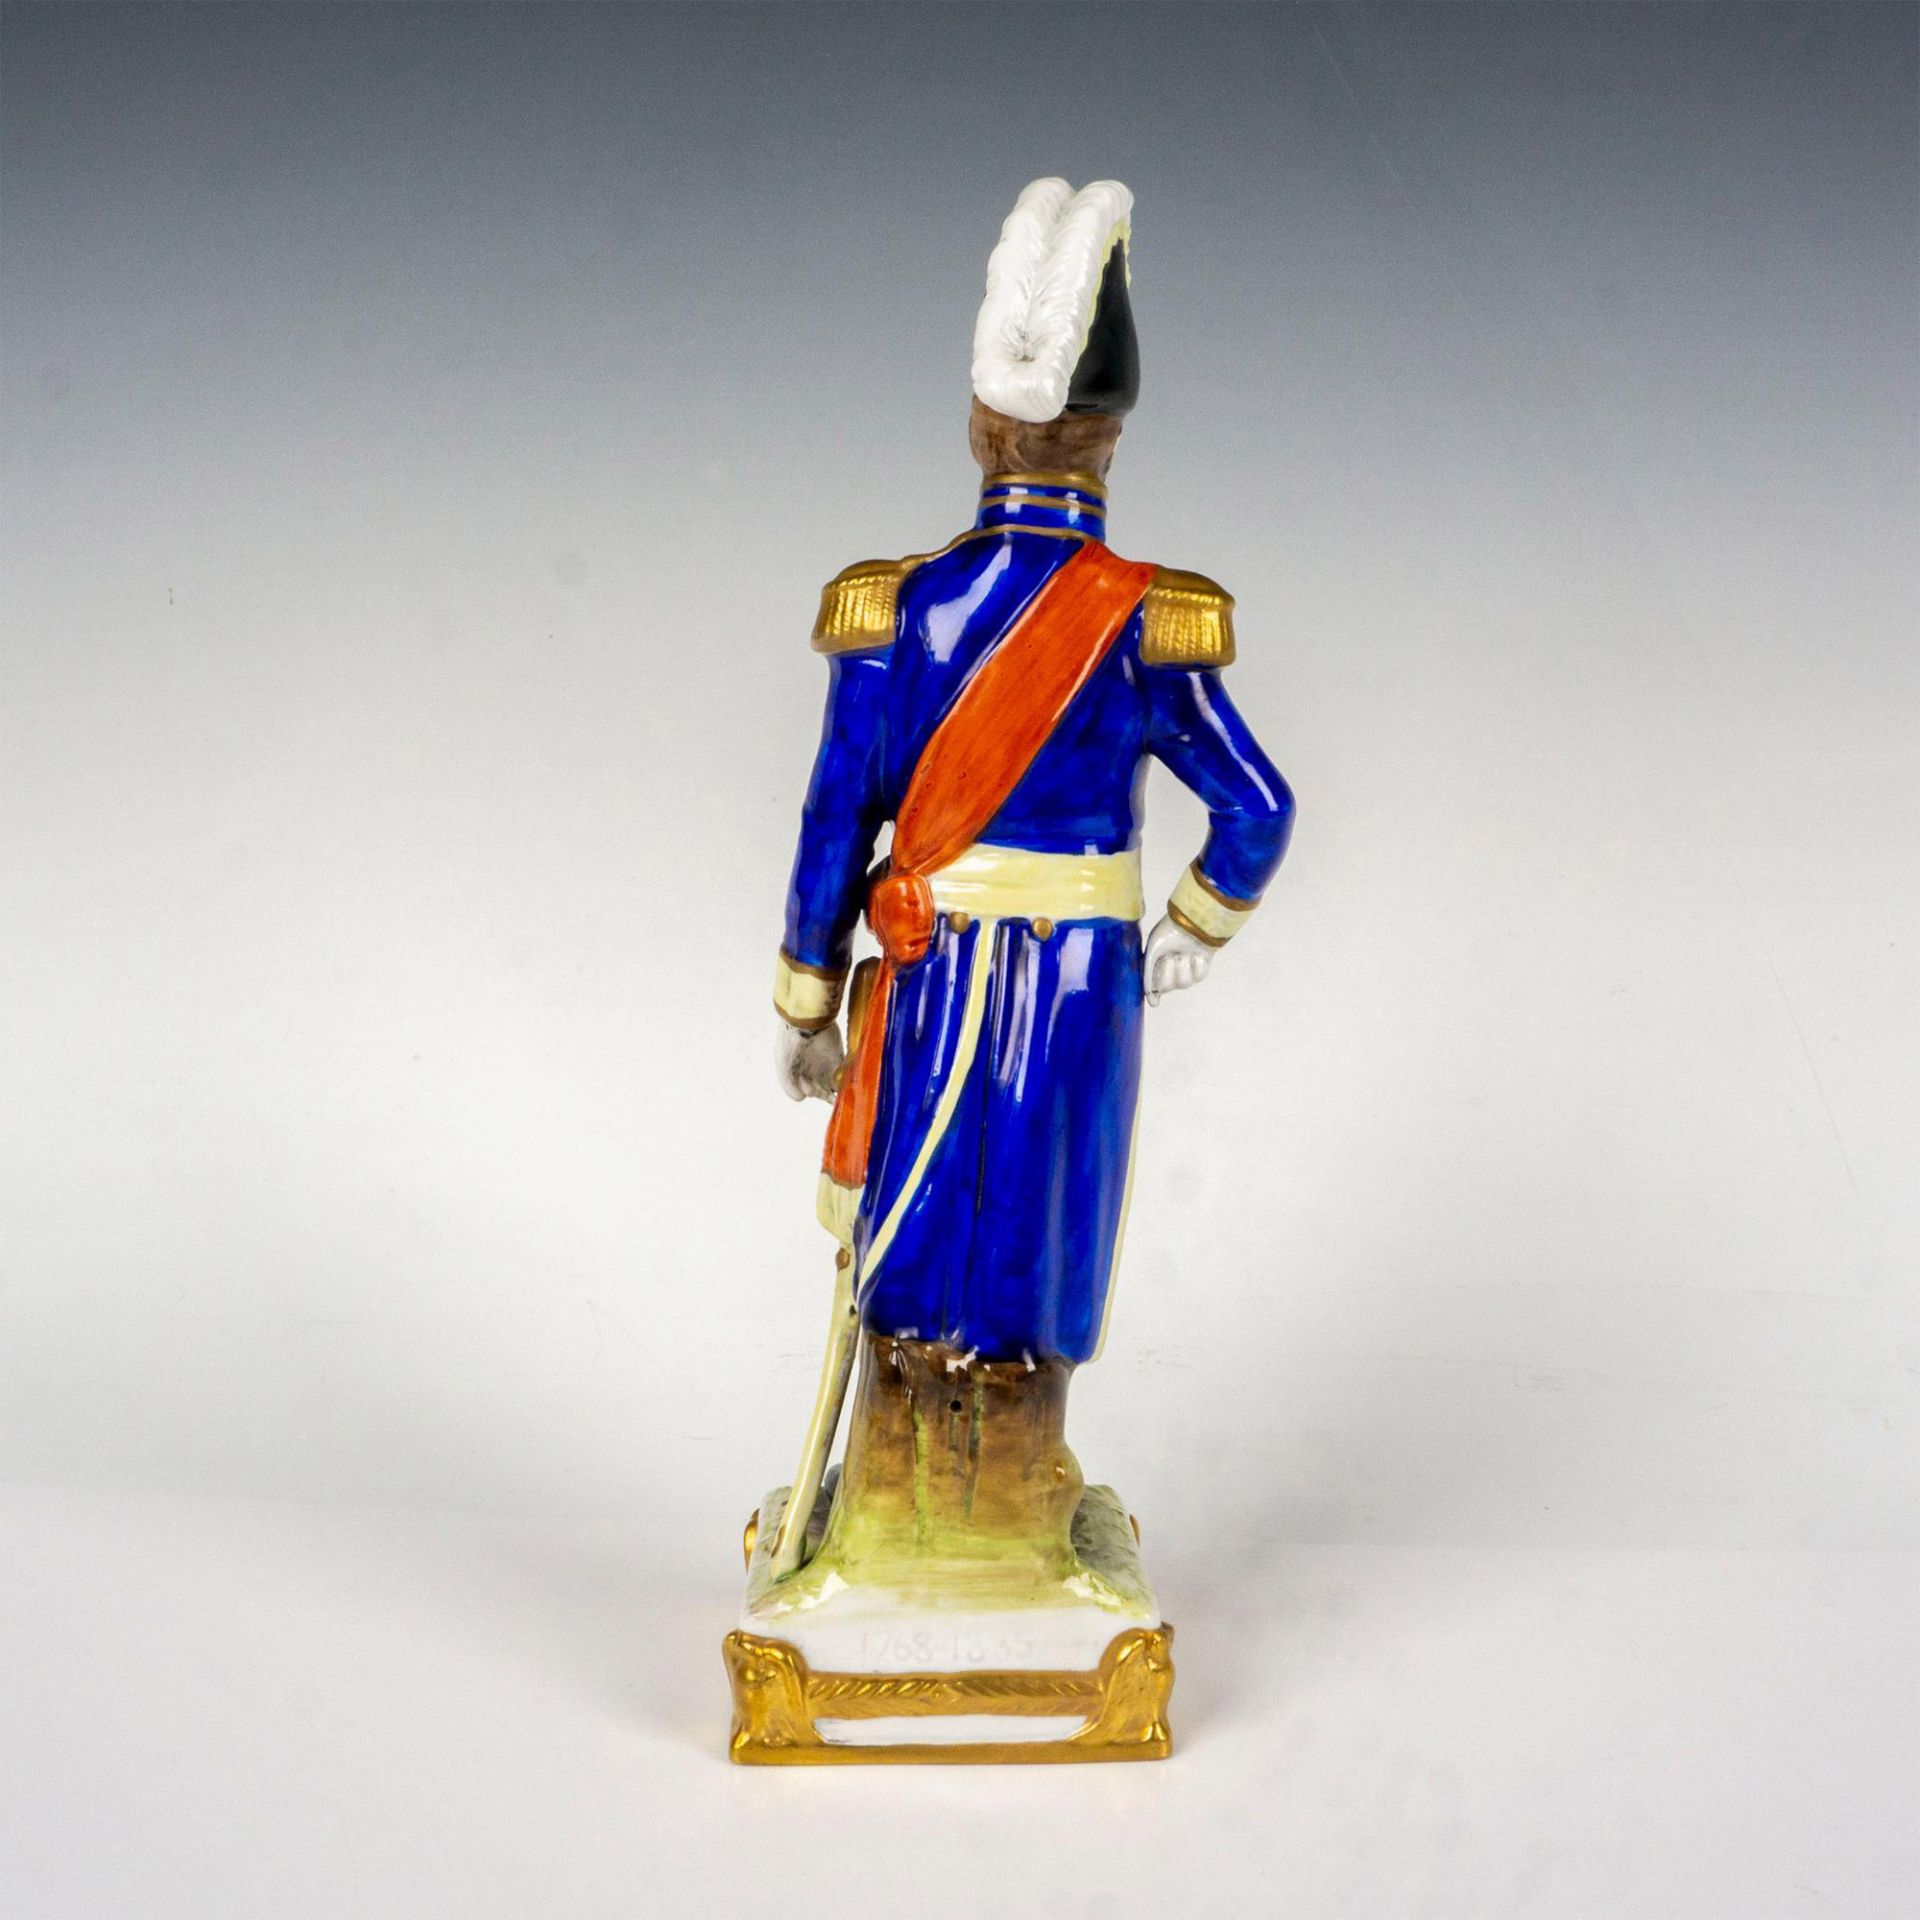 Scheibe Alsbach Porcelain Napoleonic Military Figurine - Bild 2 aus 3